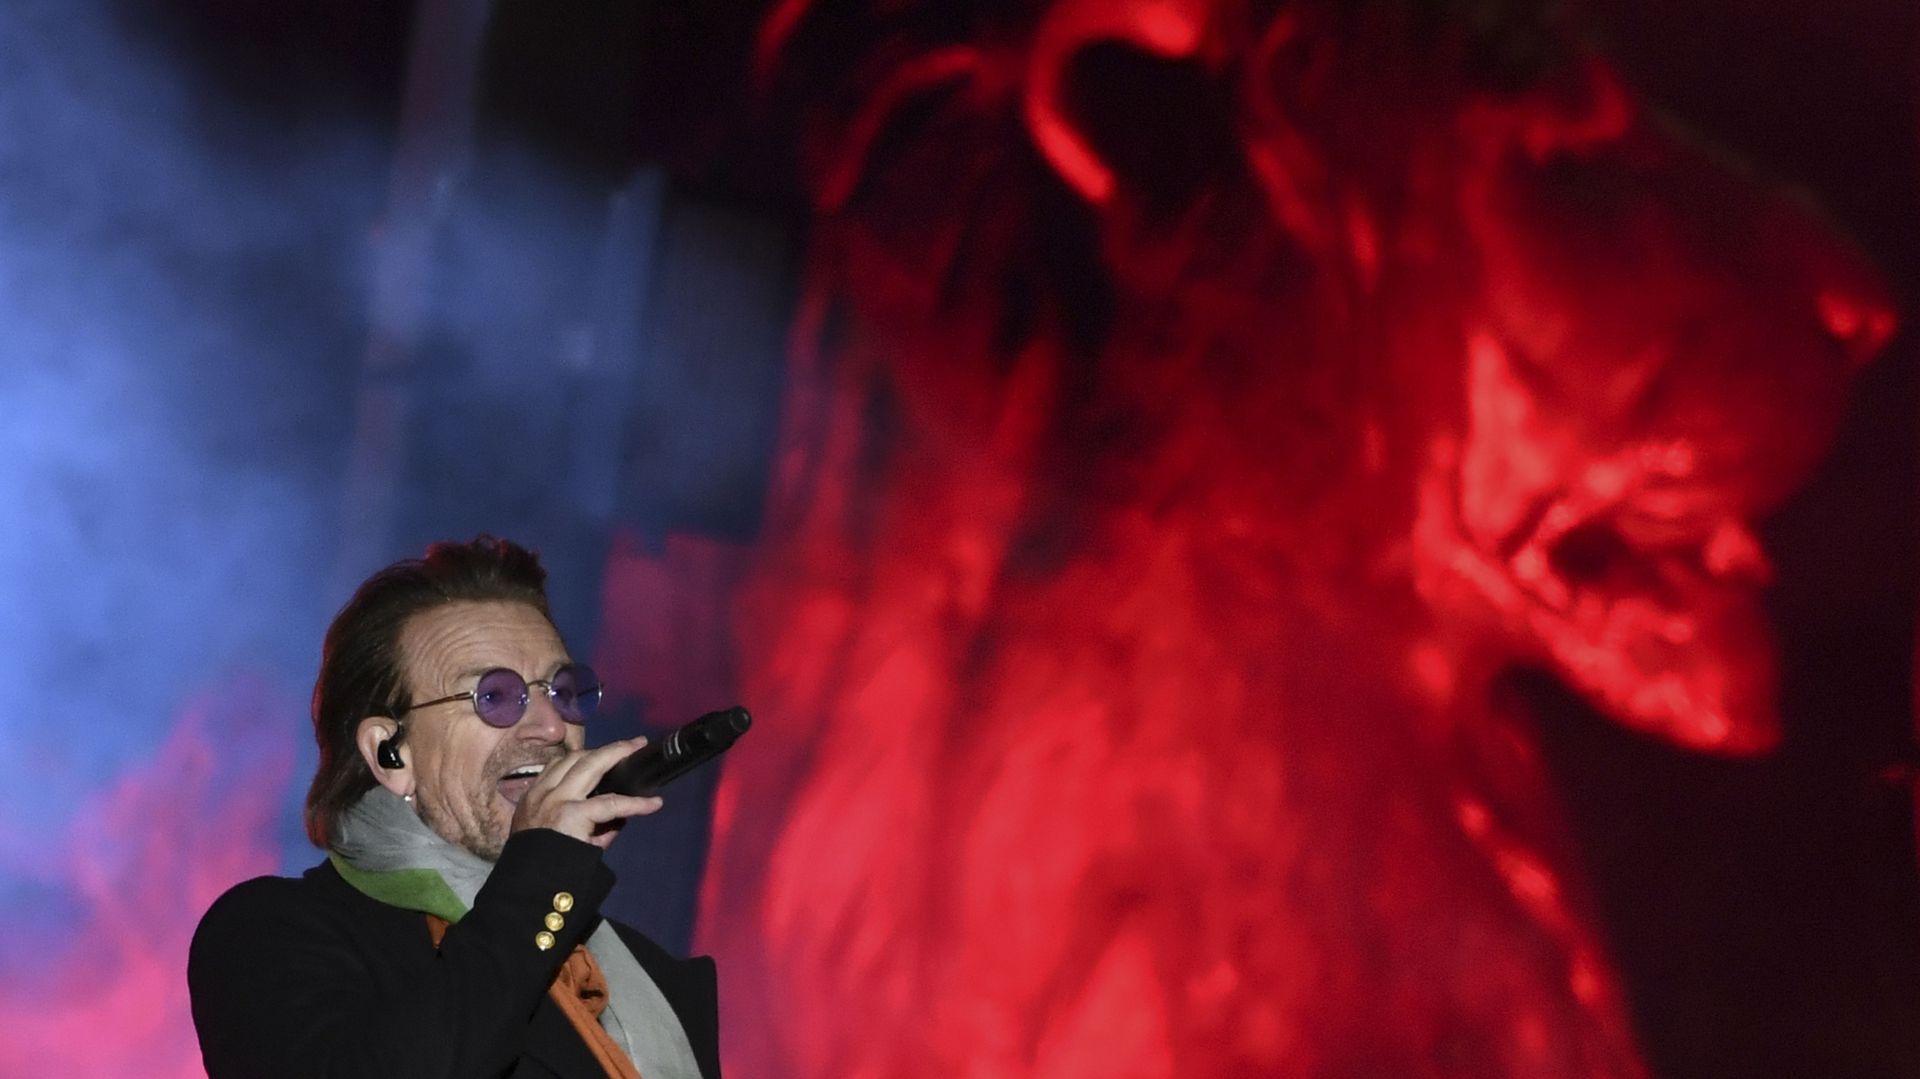 Dans un communiqué publié dimanche soir par son agent, Bono assure qu'il a retrouvé toute sa voix et que la tournée va se poursuivre comme prévu.